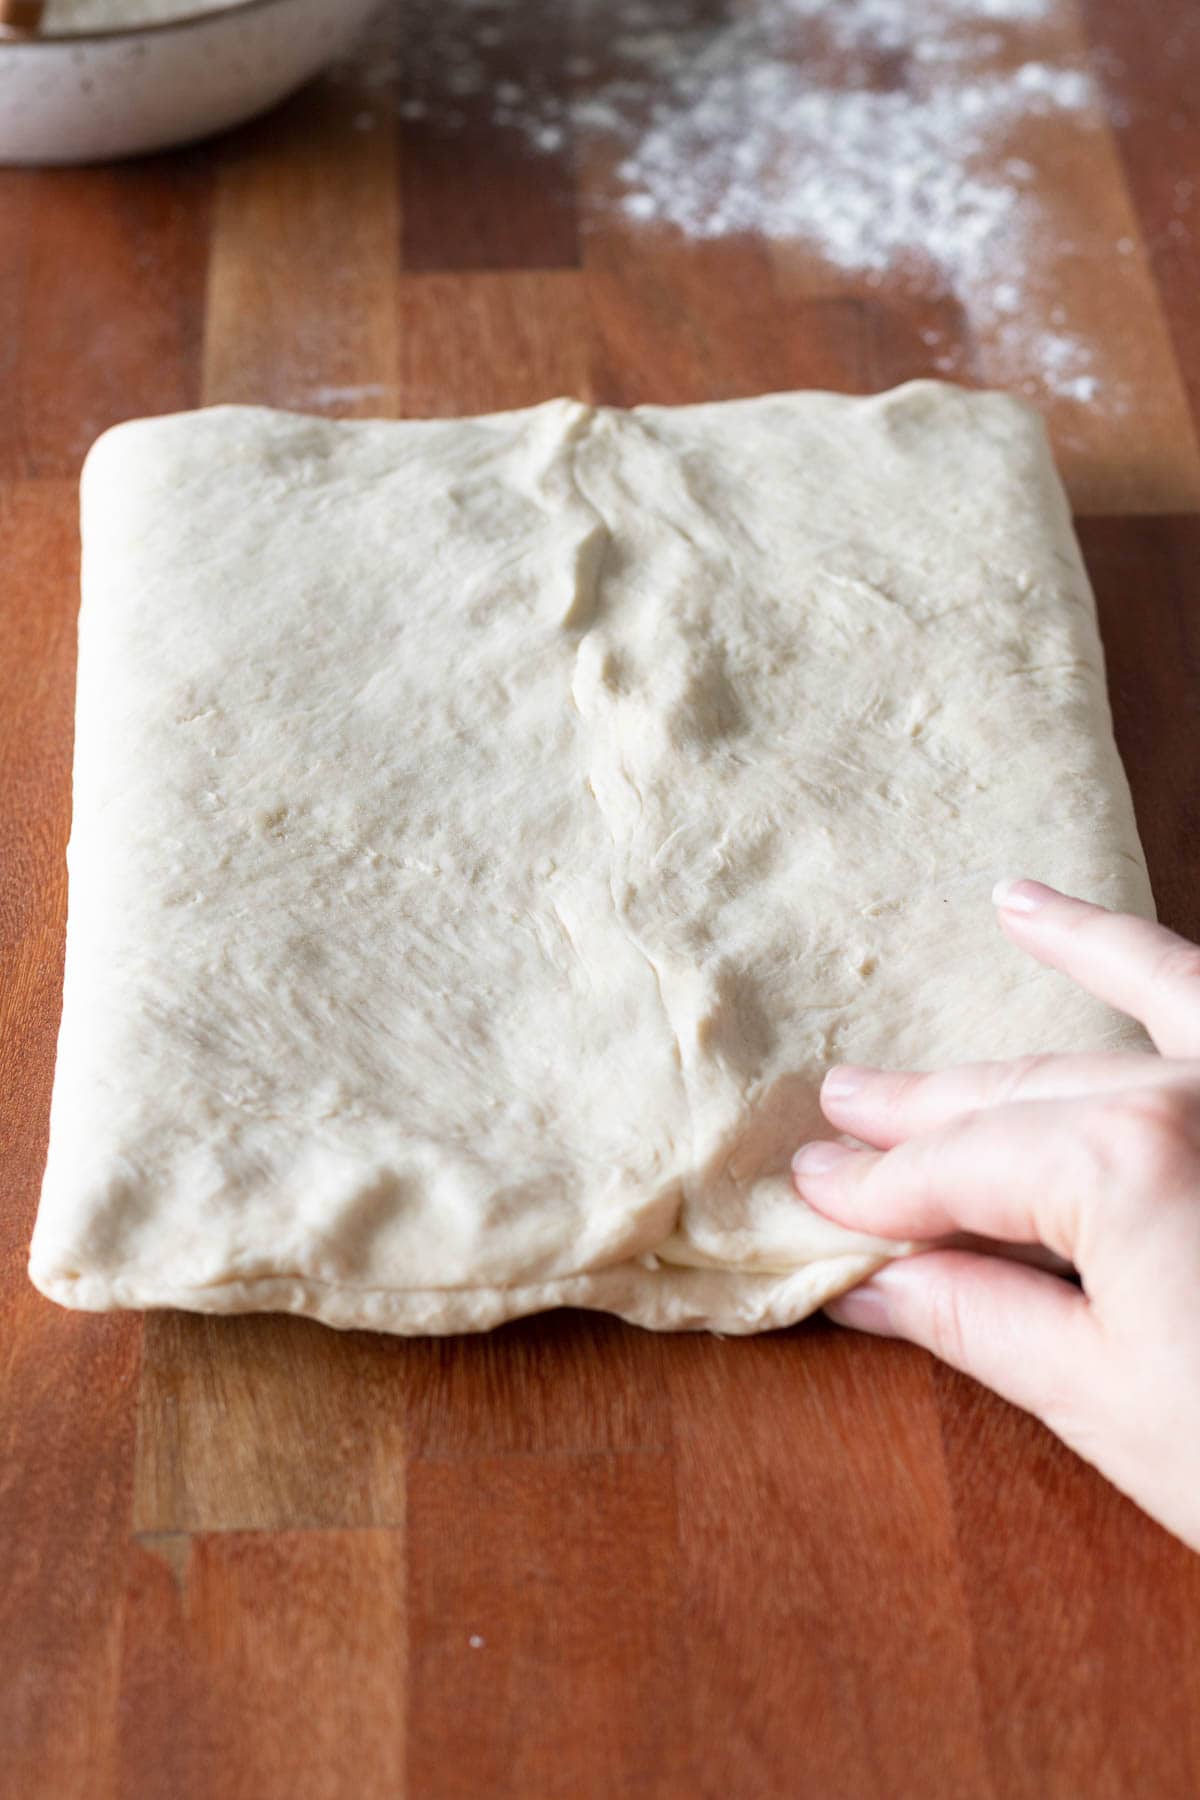 Fingers sealing croissant dough